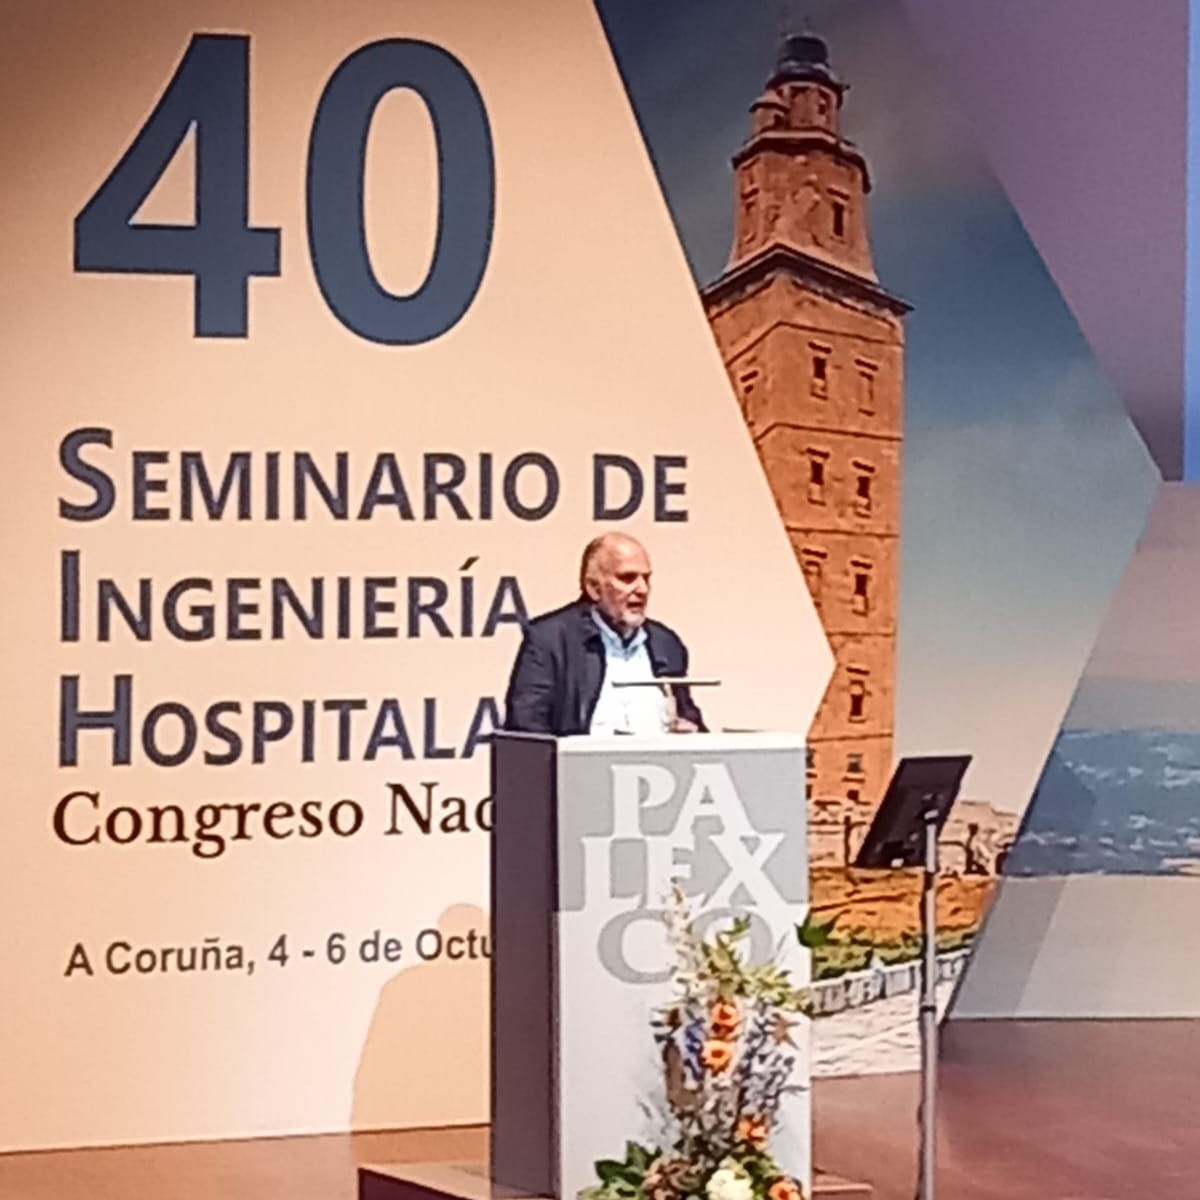 Sostenibilitat, ciberseguretat, formació i tecnologia eixos del 40 Seminari d'Enginyeria Hospitalària de A Coruña